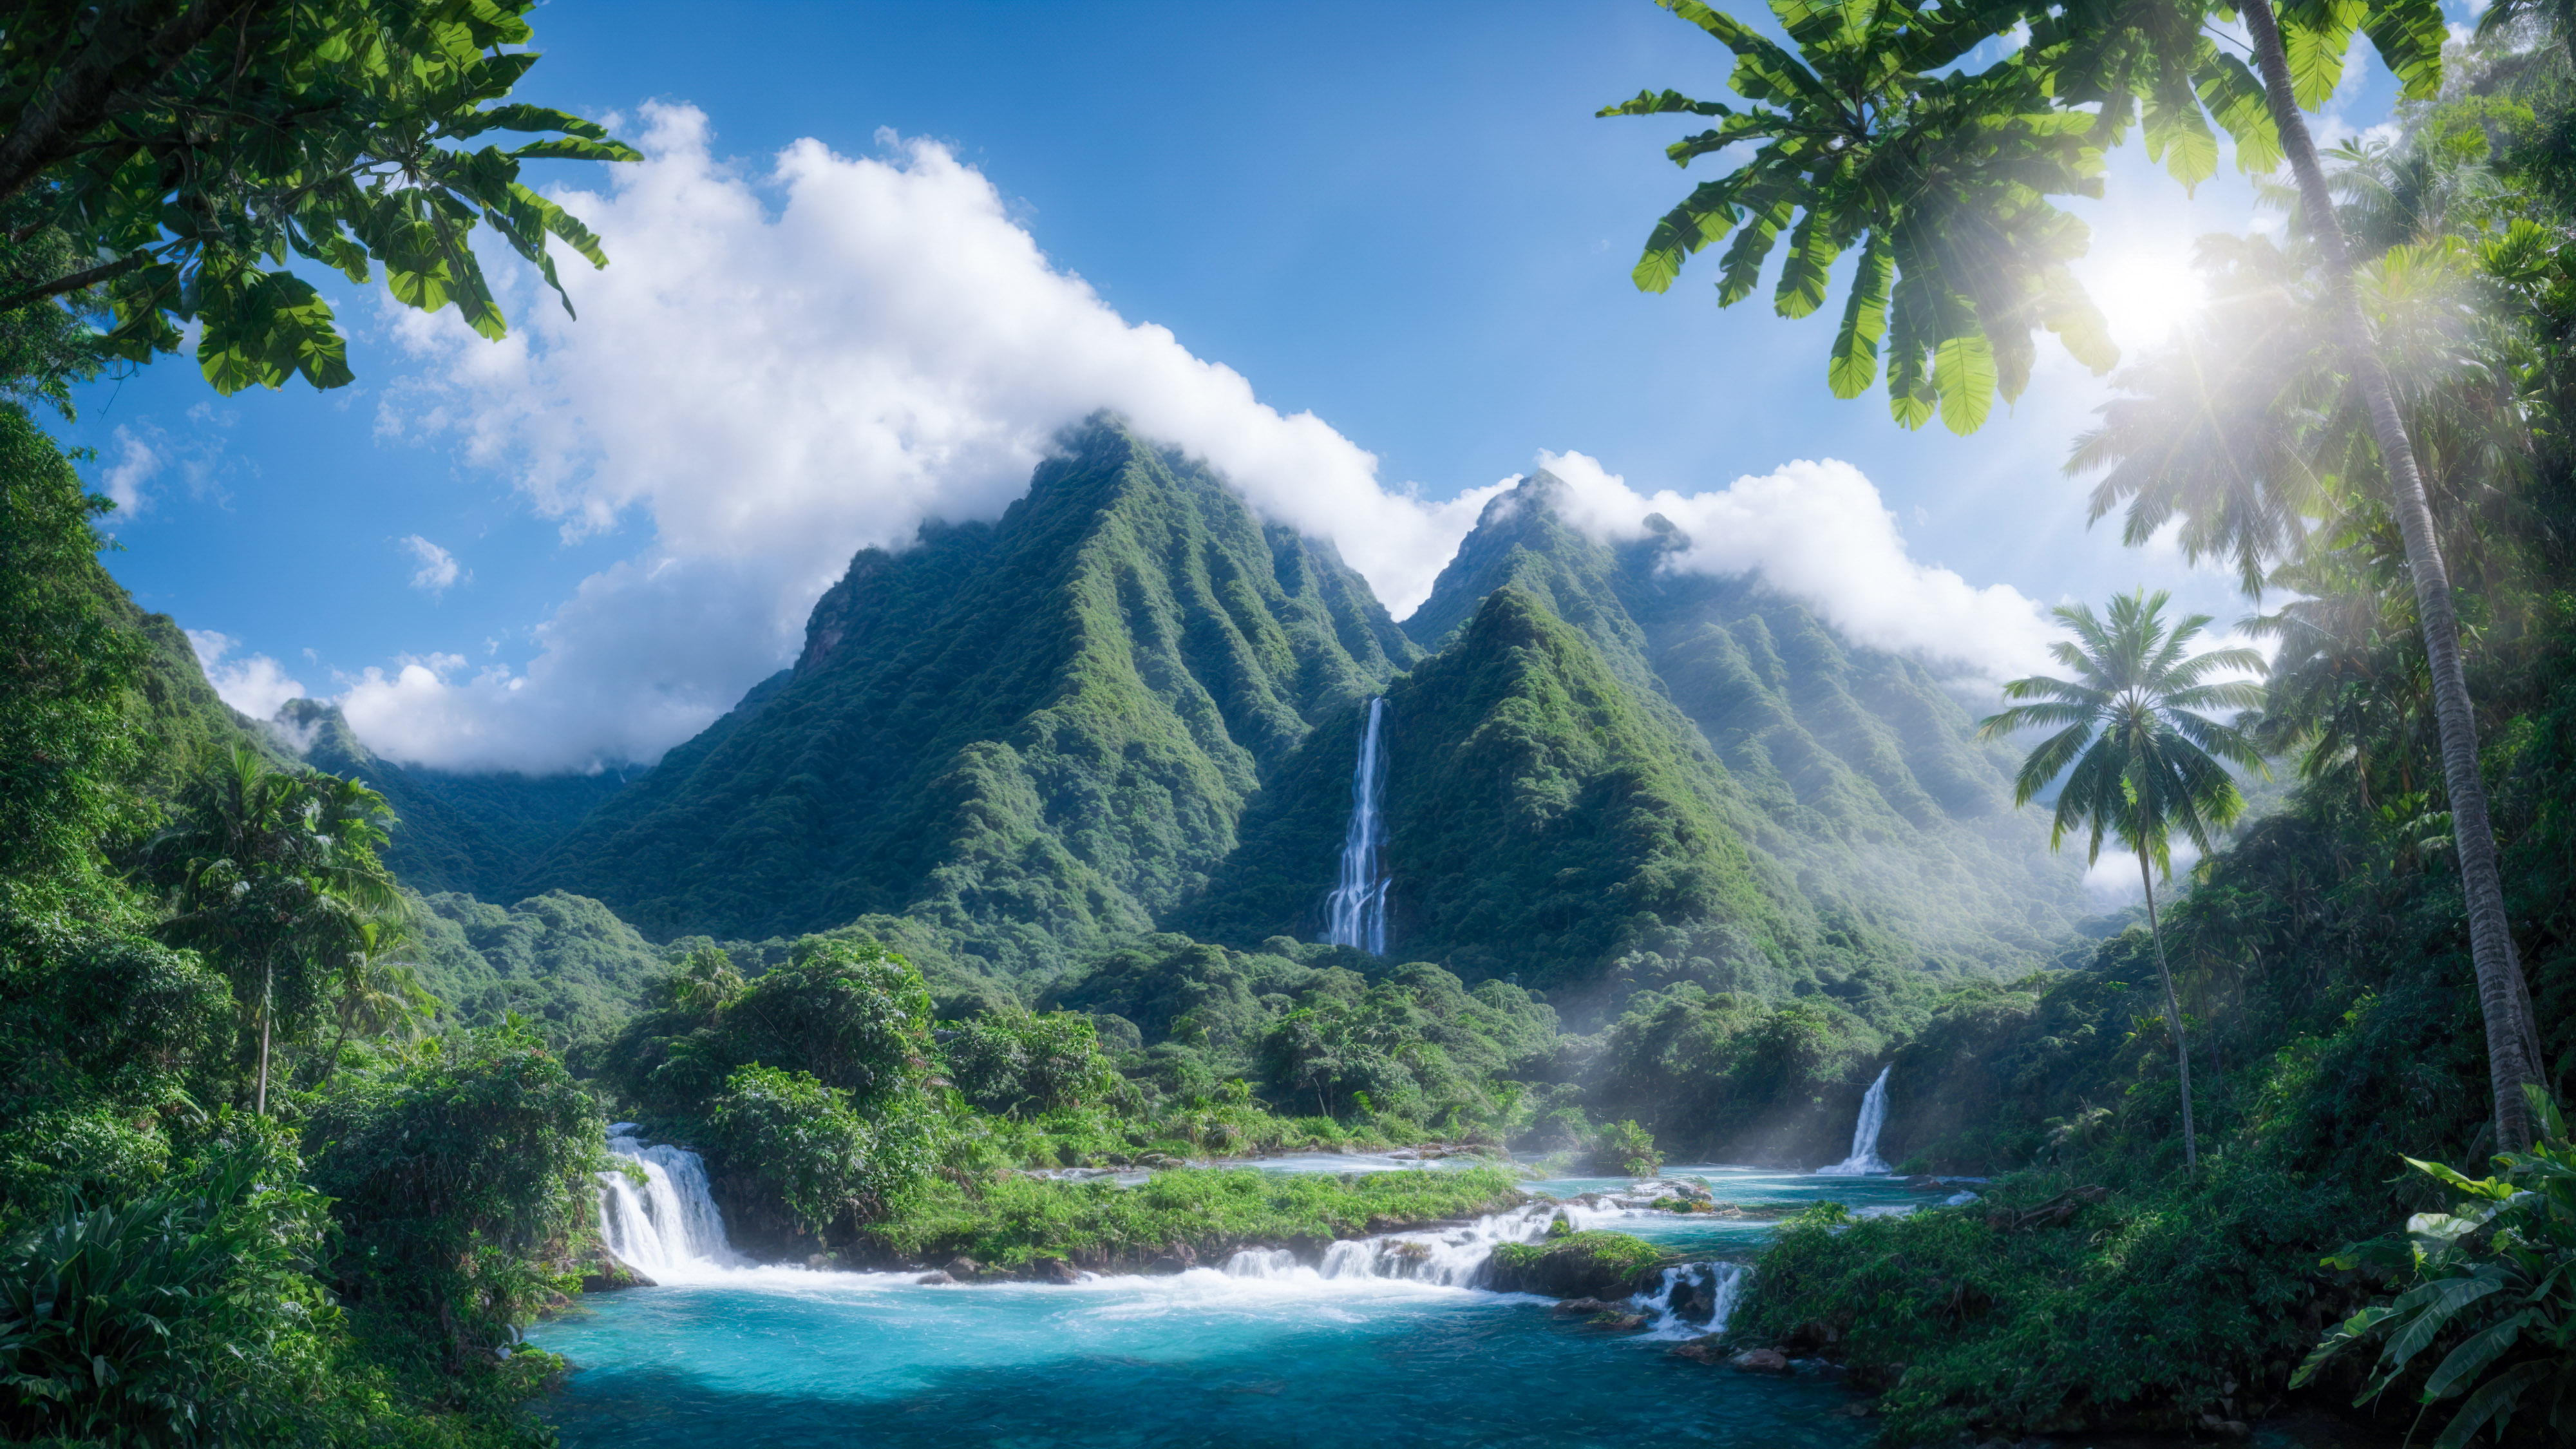 Obtenez un fond d'écran de forêt qui présente une montagne tropicale avec une jungle luxuriante et une cascade, complétée par un arc-en-ciel et un ciel bleu.